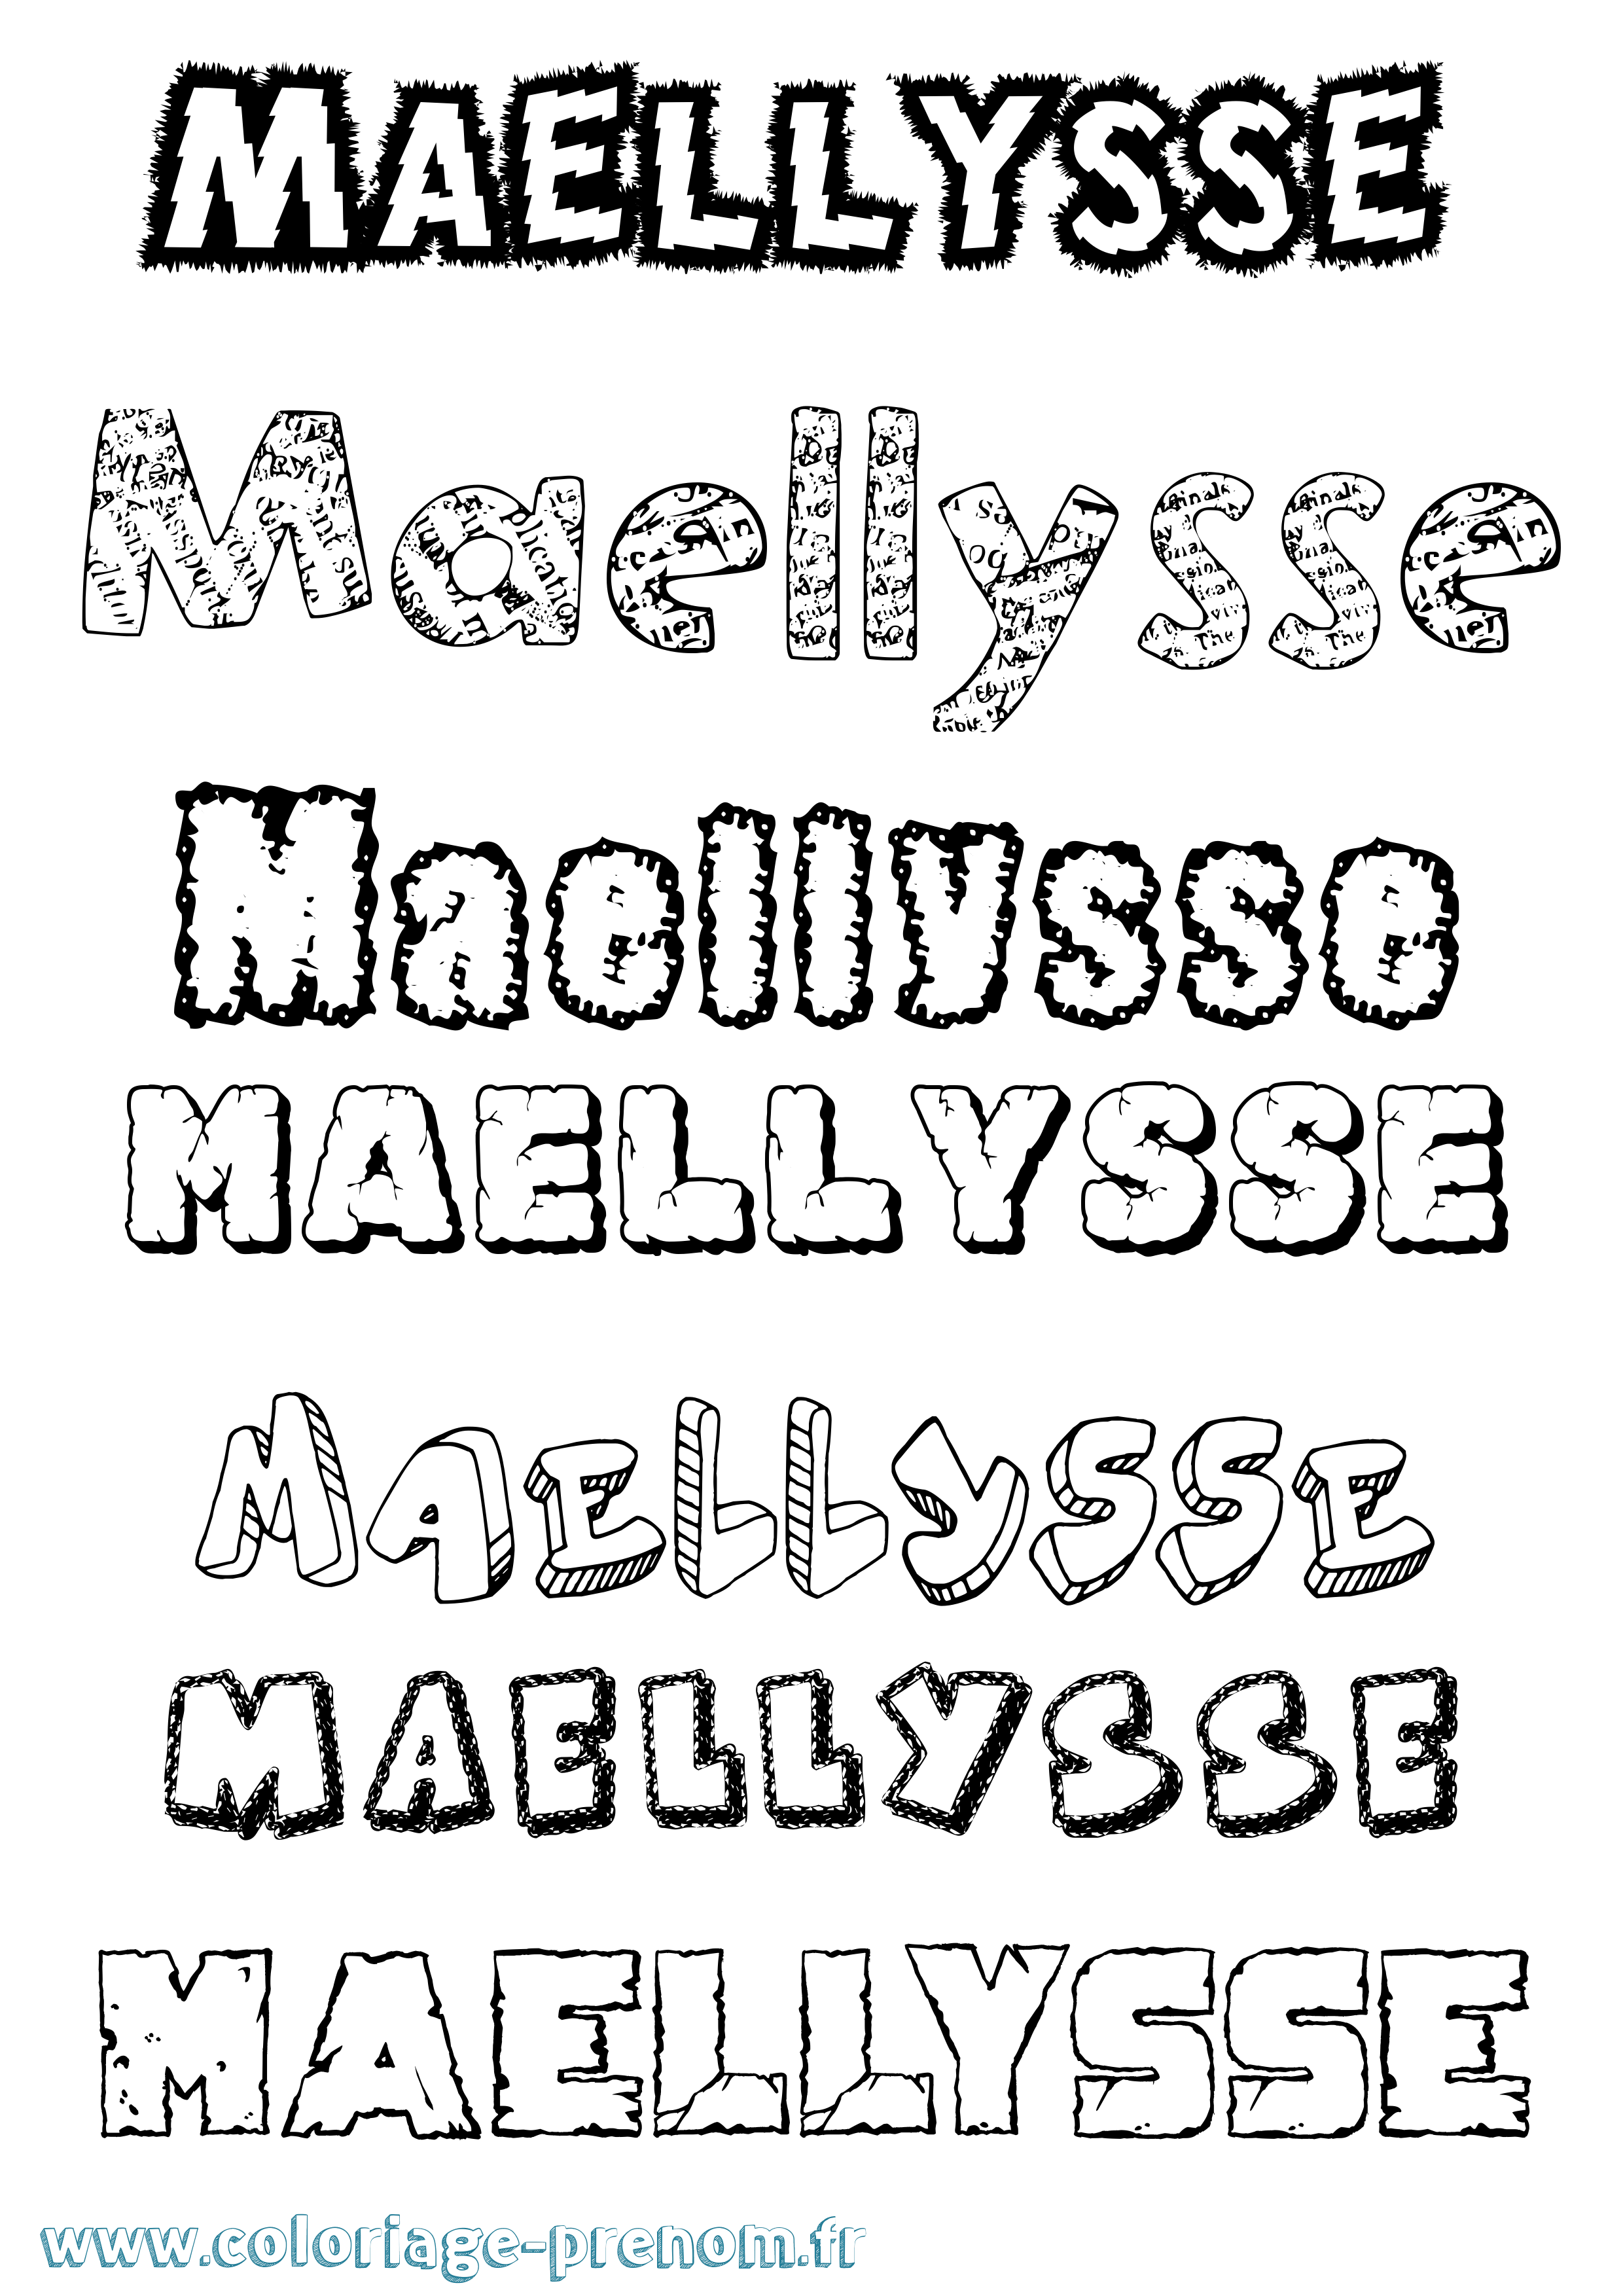 Coloriage prénom Maellysse Destructuré